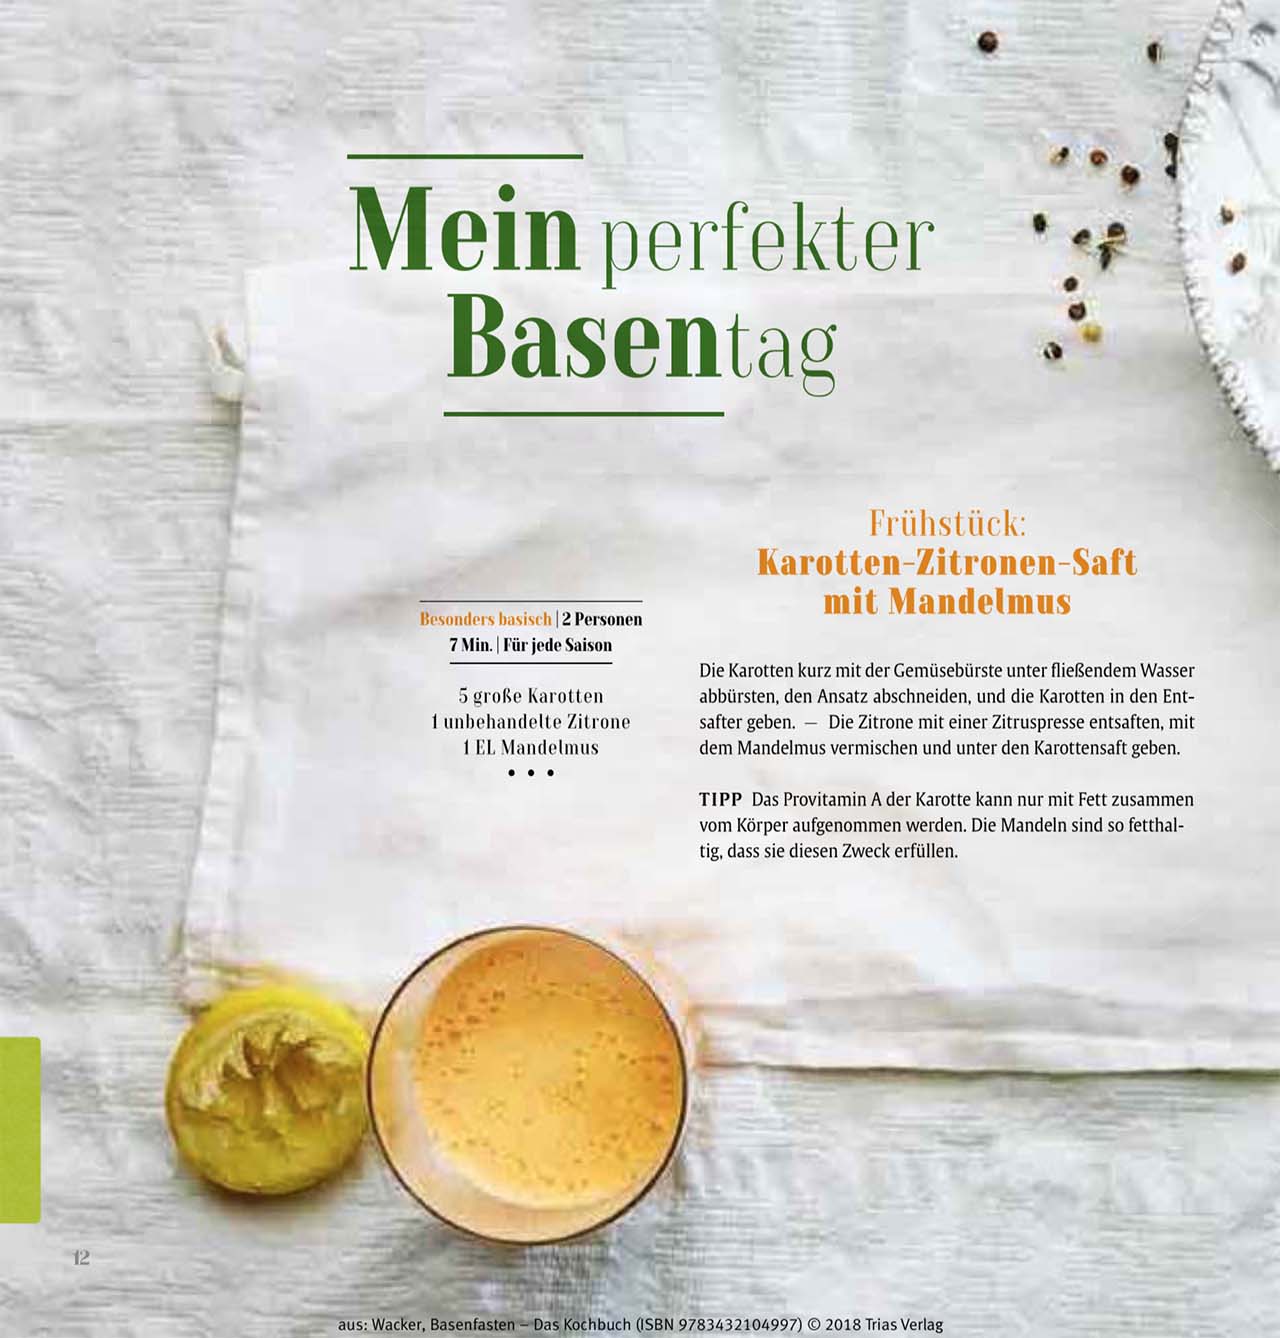 basenfasten - das Kochbuch von Sabine Wacker, TRIAS-Verlag